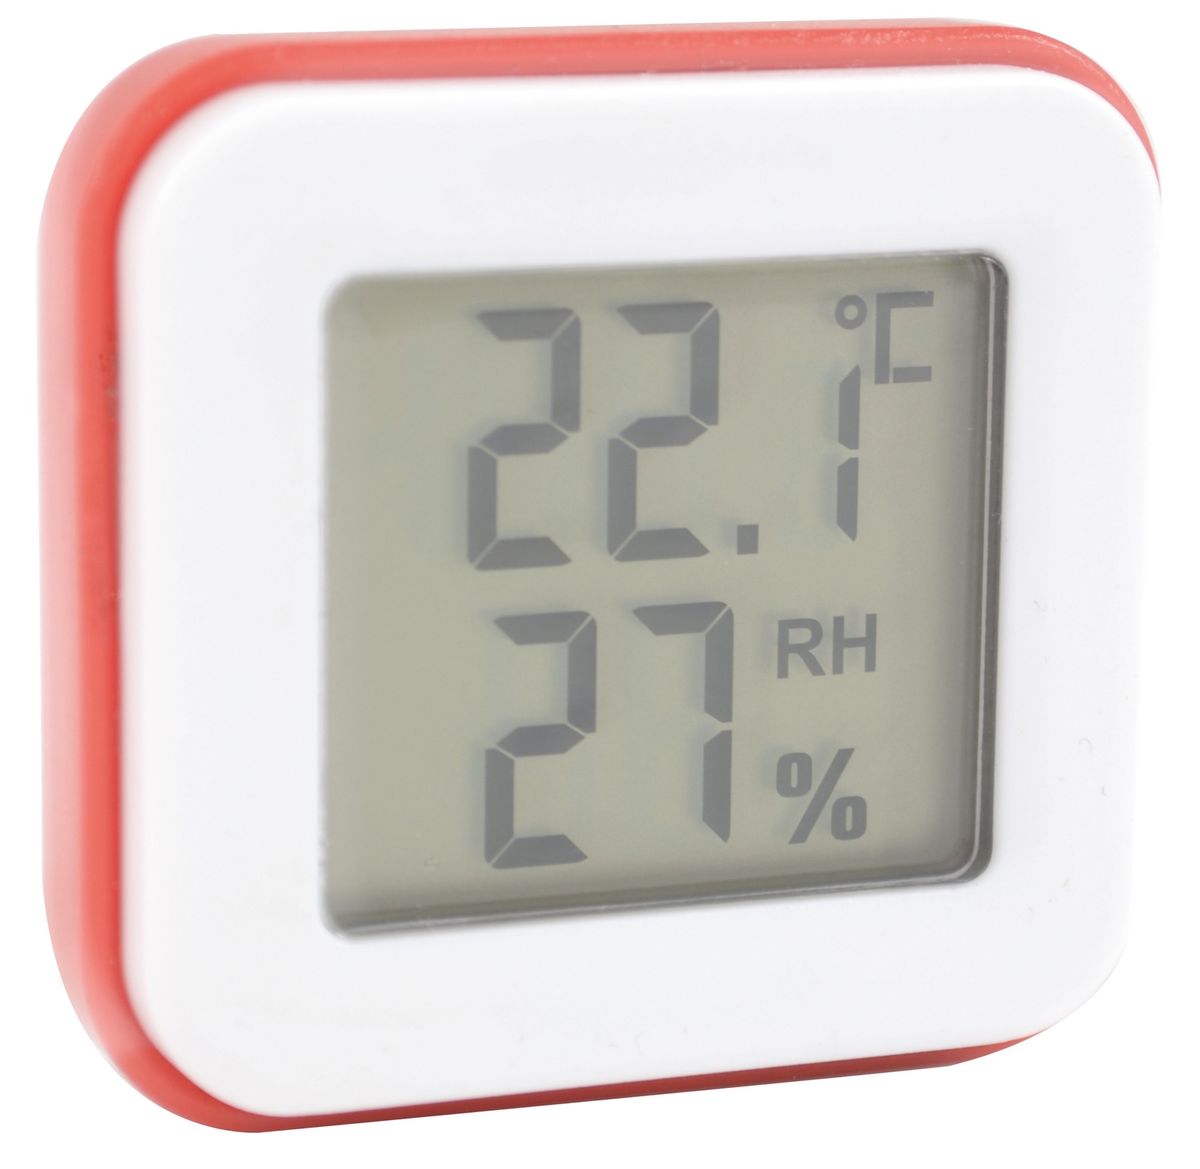 Mini thermometre hygrometre Stil